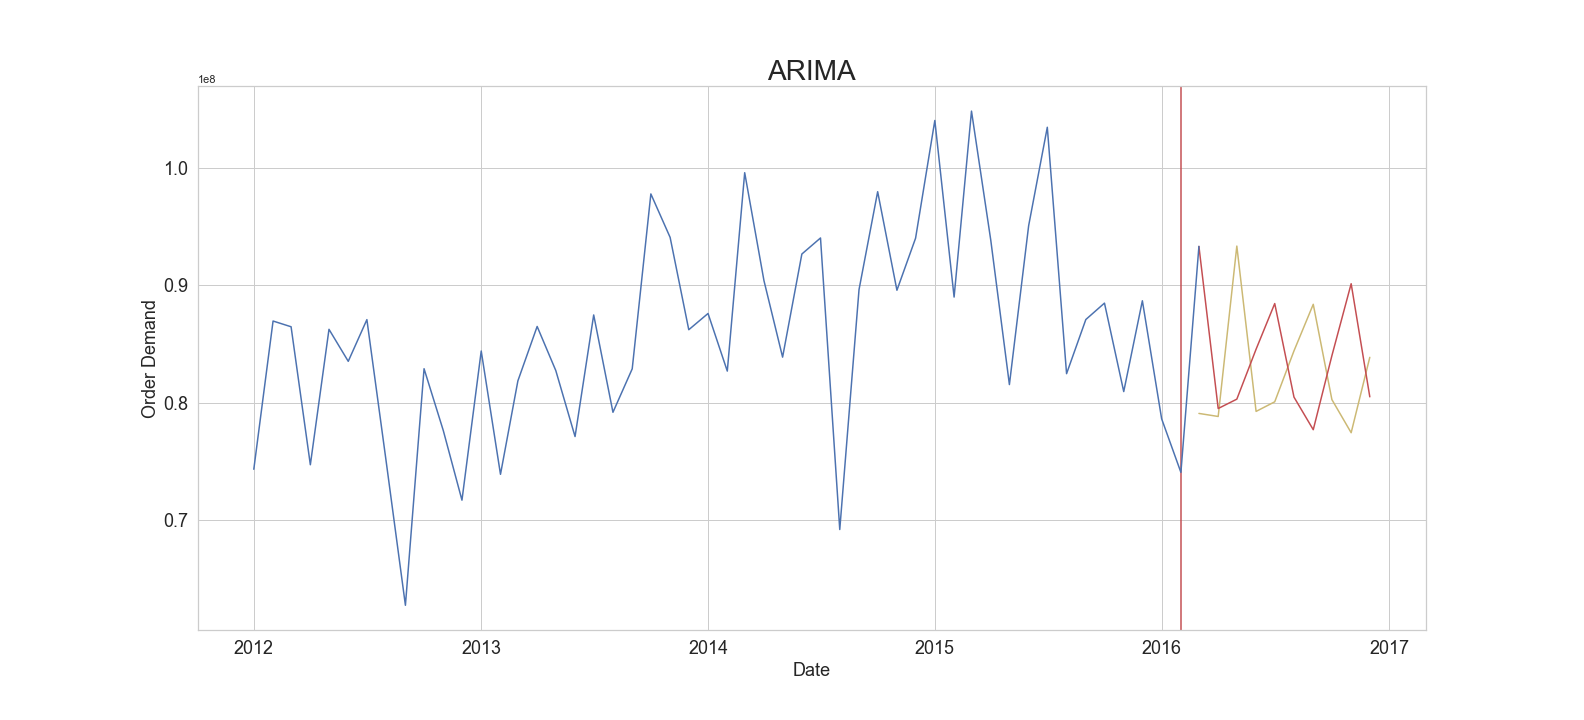 ARIMA Forecast